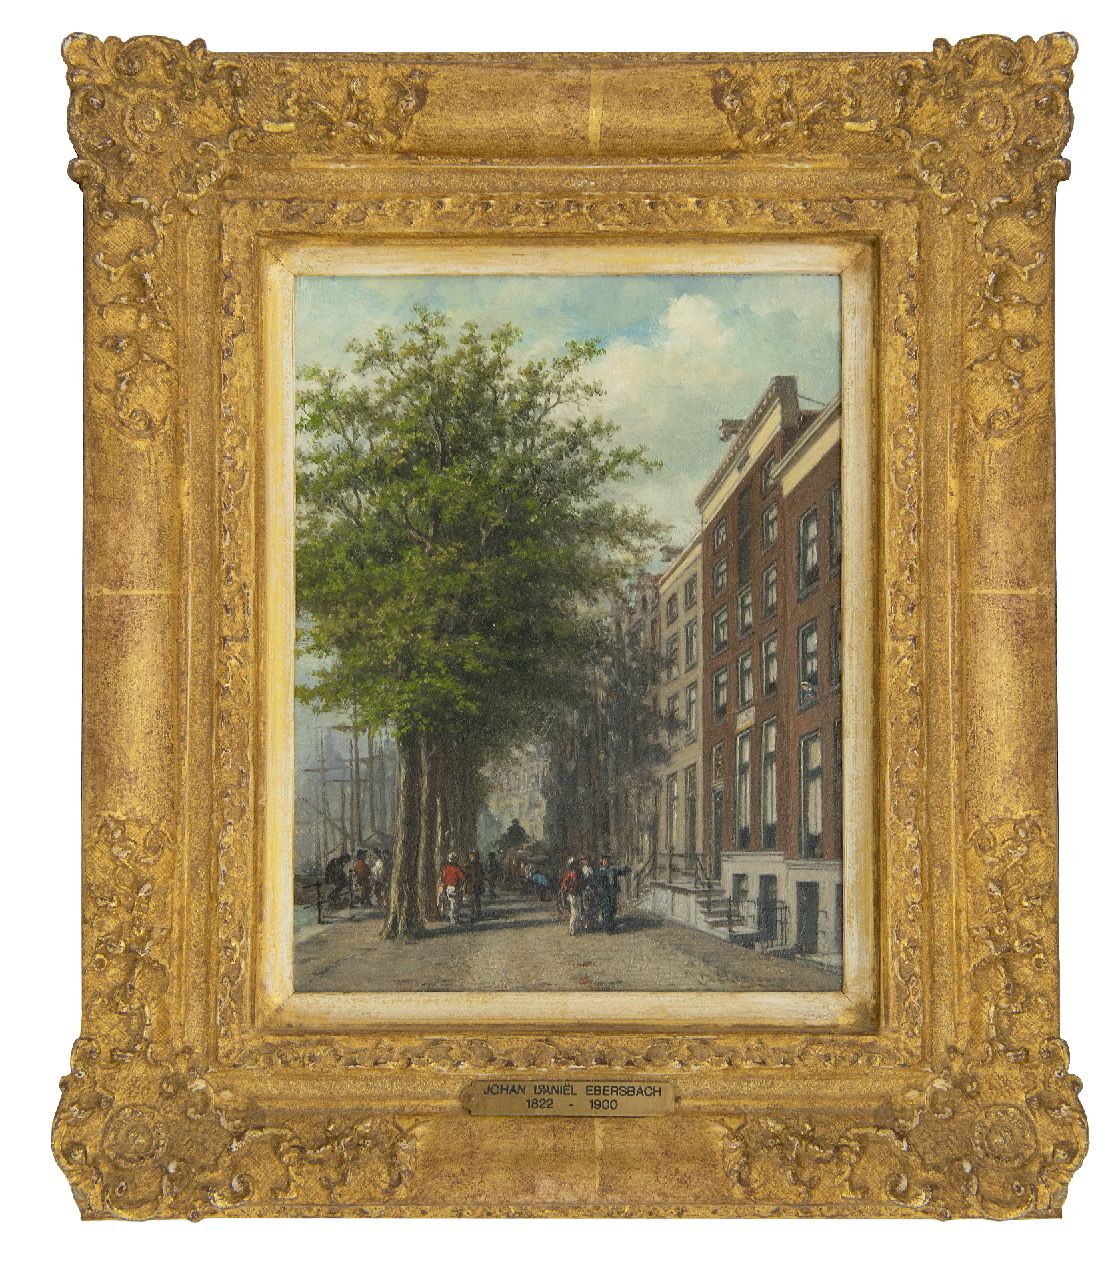 Ebersbach J.D.  | Johan Daniël Ebersbach | Gemälde zum Verkauf angeboten | Am Wolwevershaven in Dordrecht, Öl auf Holz 21,5 x 16,2 cm, Unterzeichnet r.u.